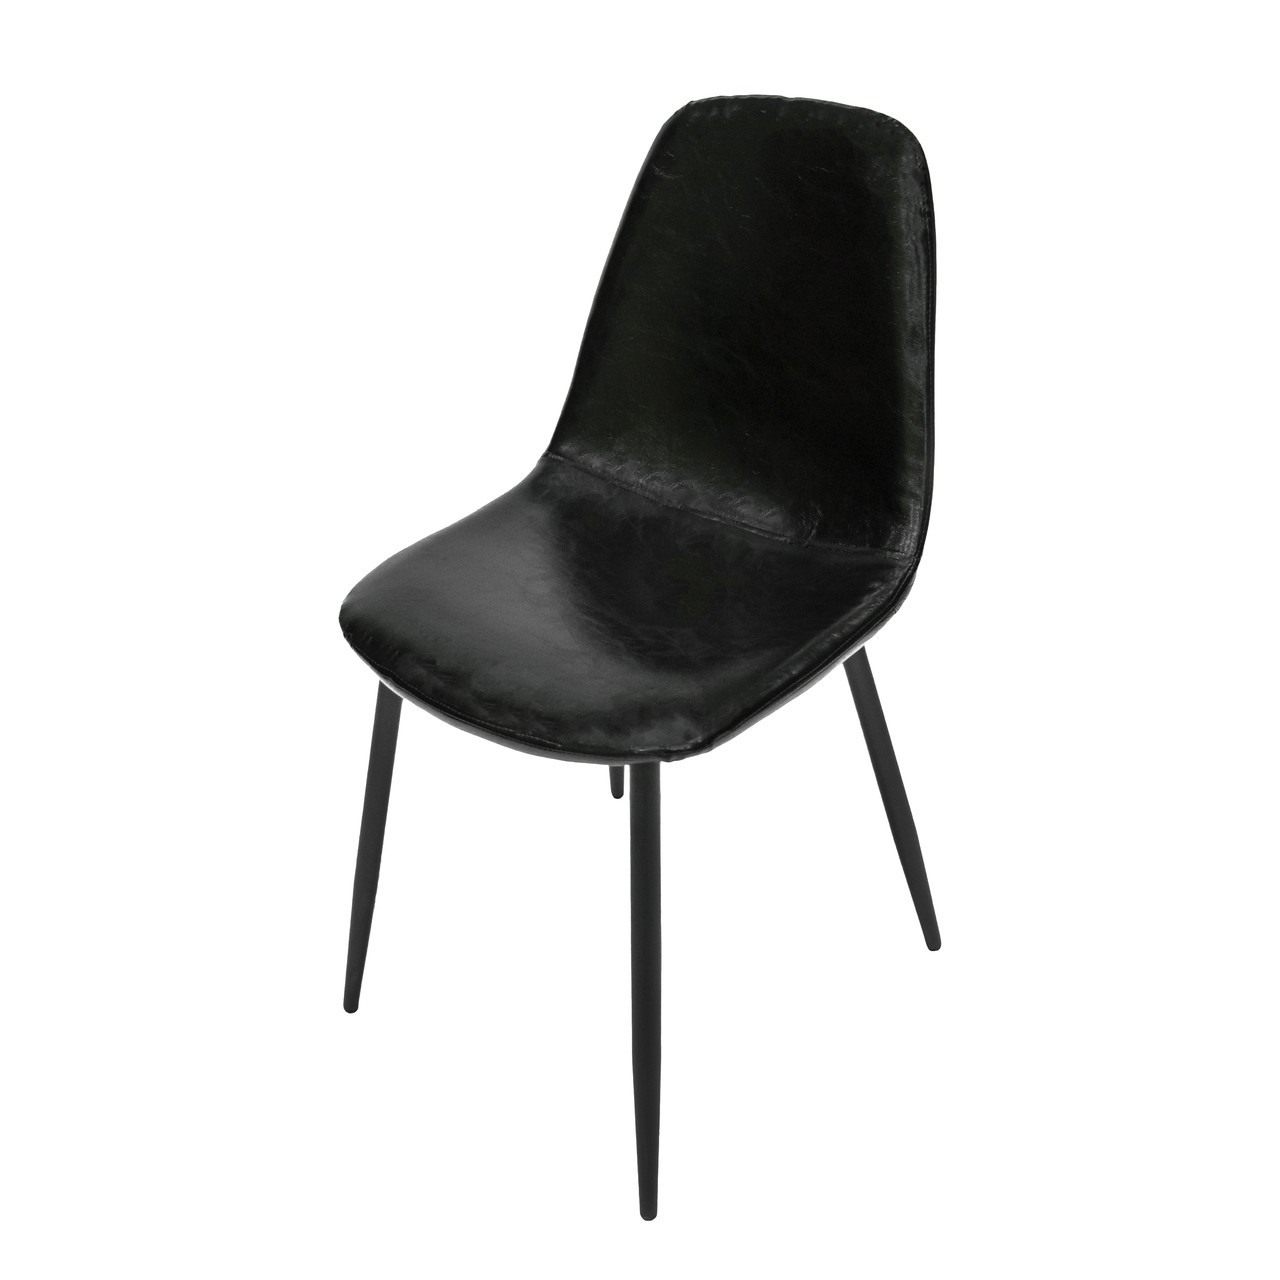 Чорний стілець Intarsio Viano Чорний (VIANOBK) з еко-шкіри, кухонний стілець, стілець в кафе, вітальню, кабінет